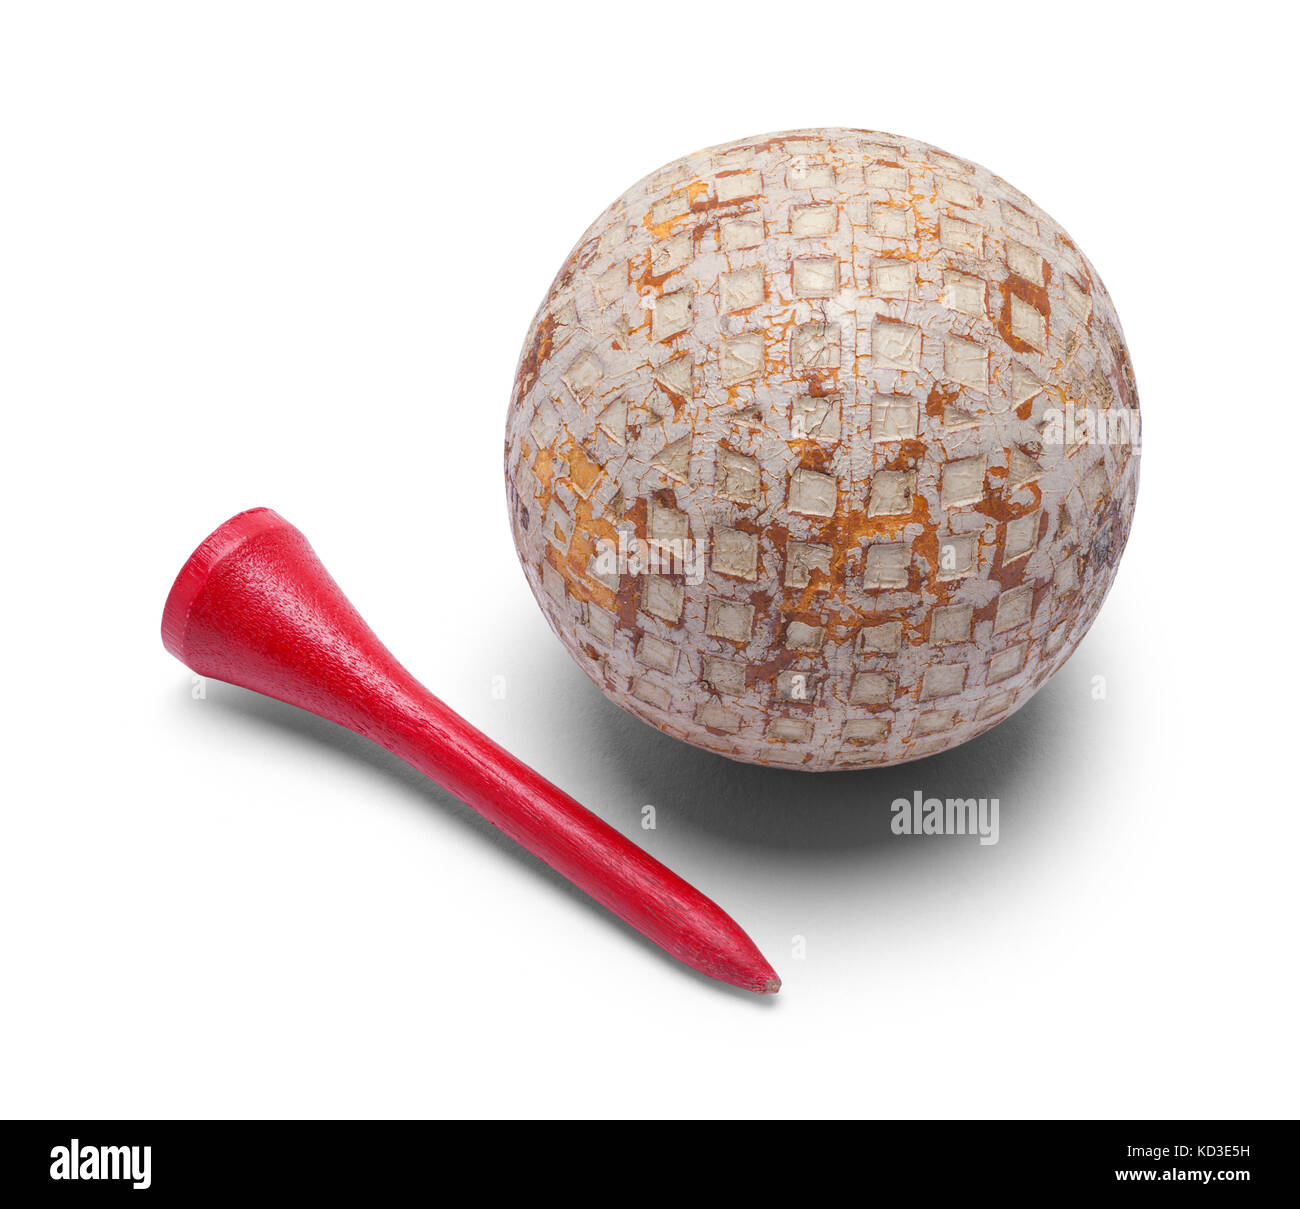 Vieille balle de golf et tee rouge isolé sur fond blanc. Banque D'Images